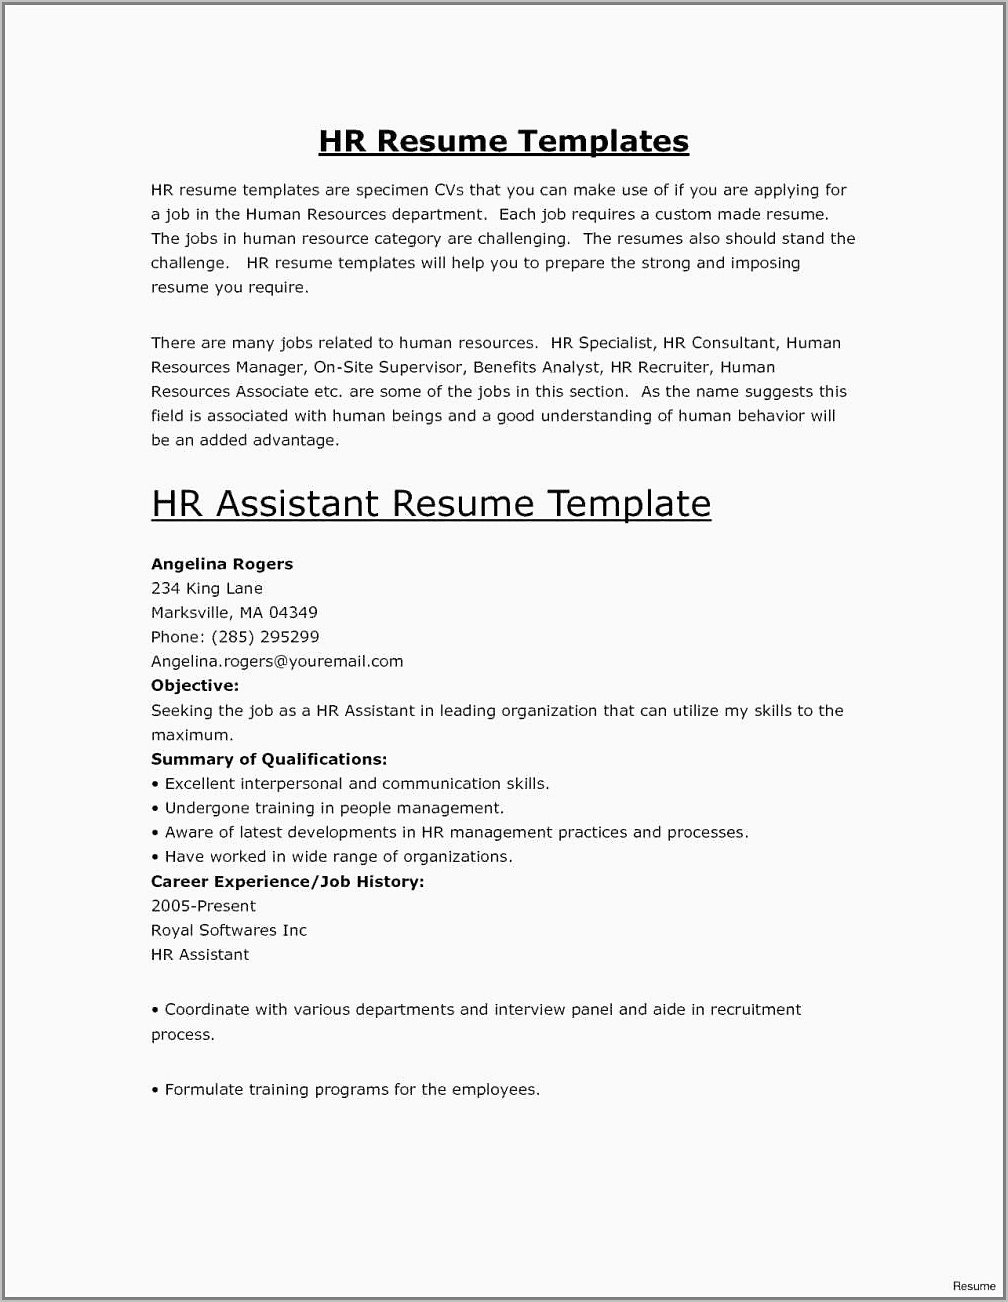 Resume Format Pdf Download